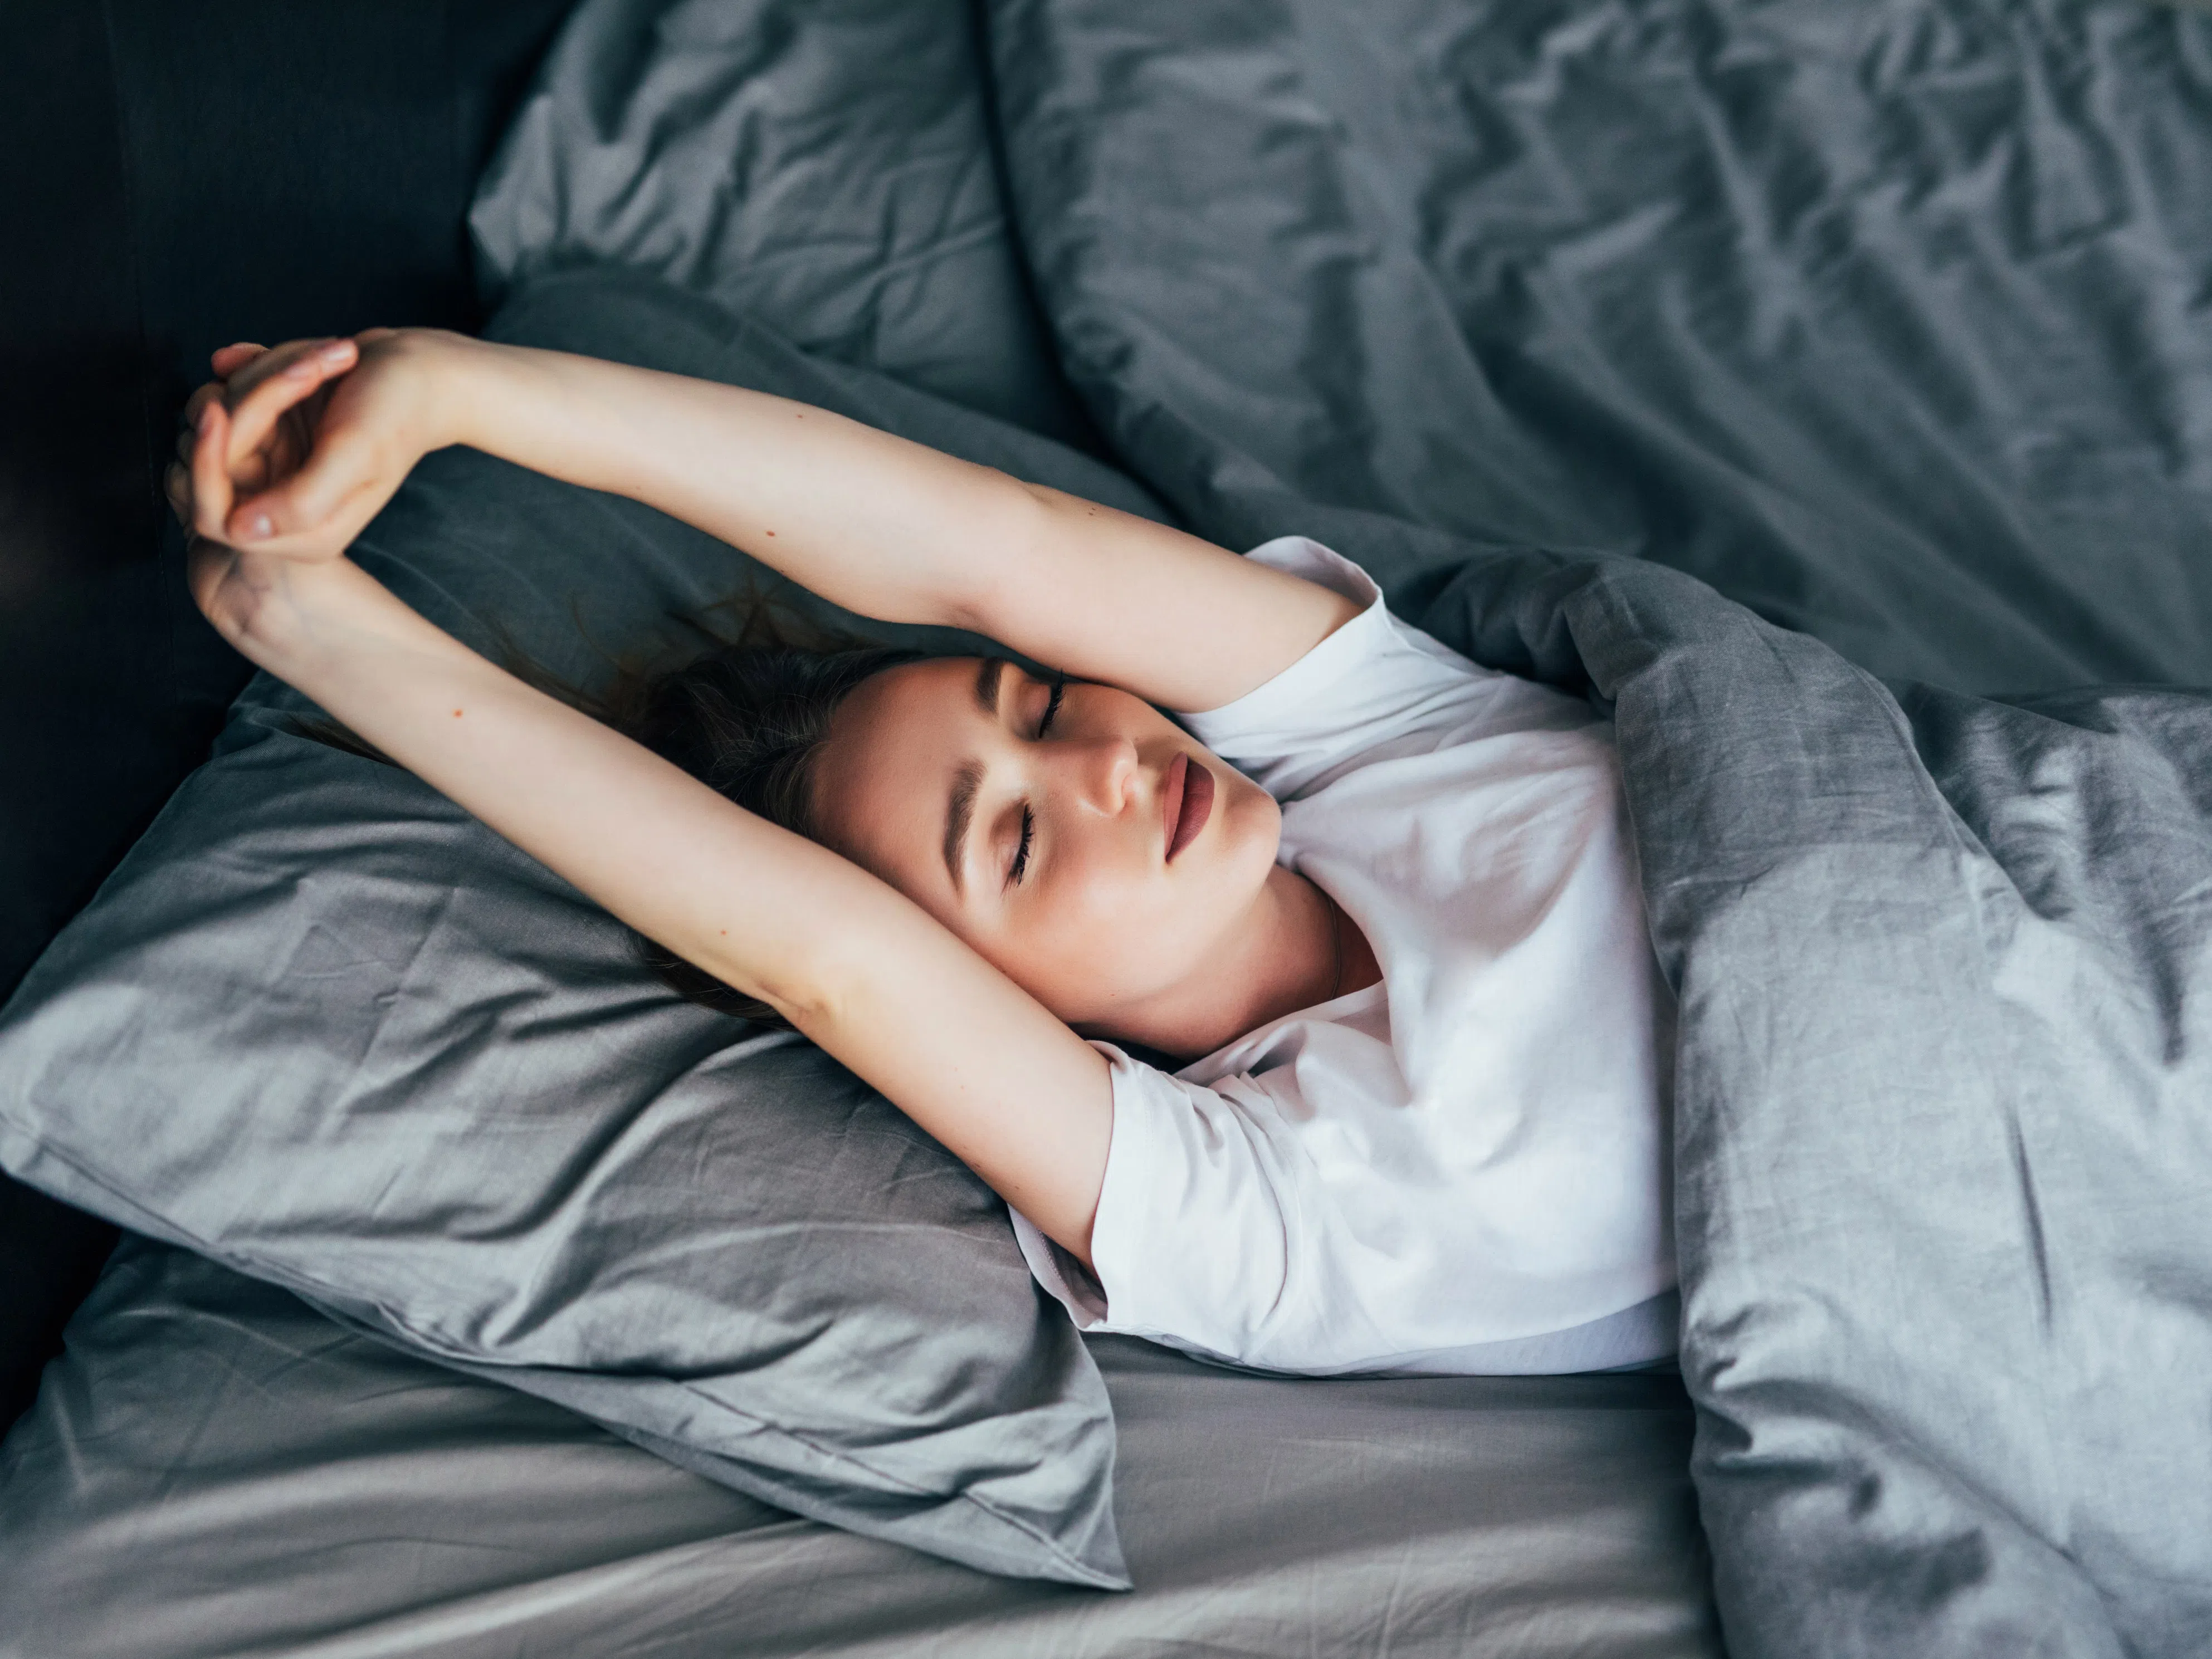 Код здраве: Това е най-лошото време за заспиване, предупреждава лекар